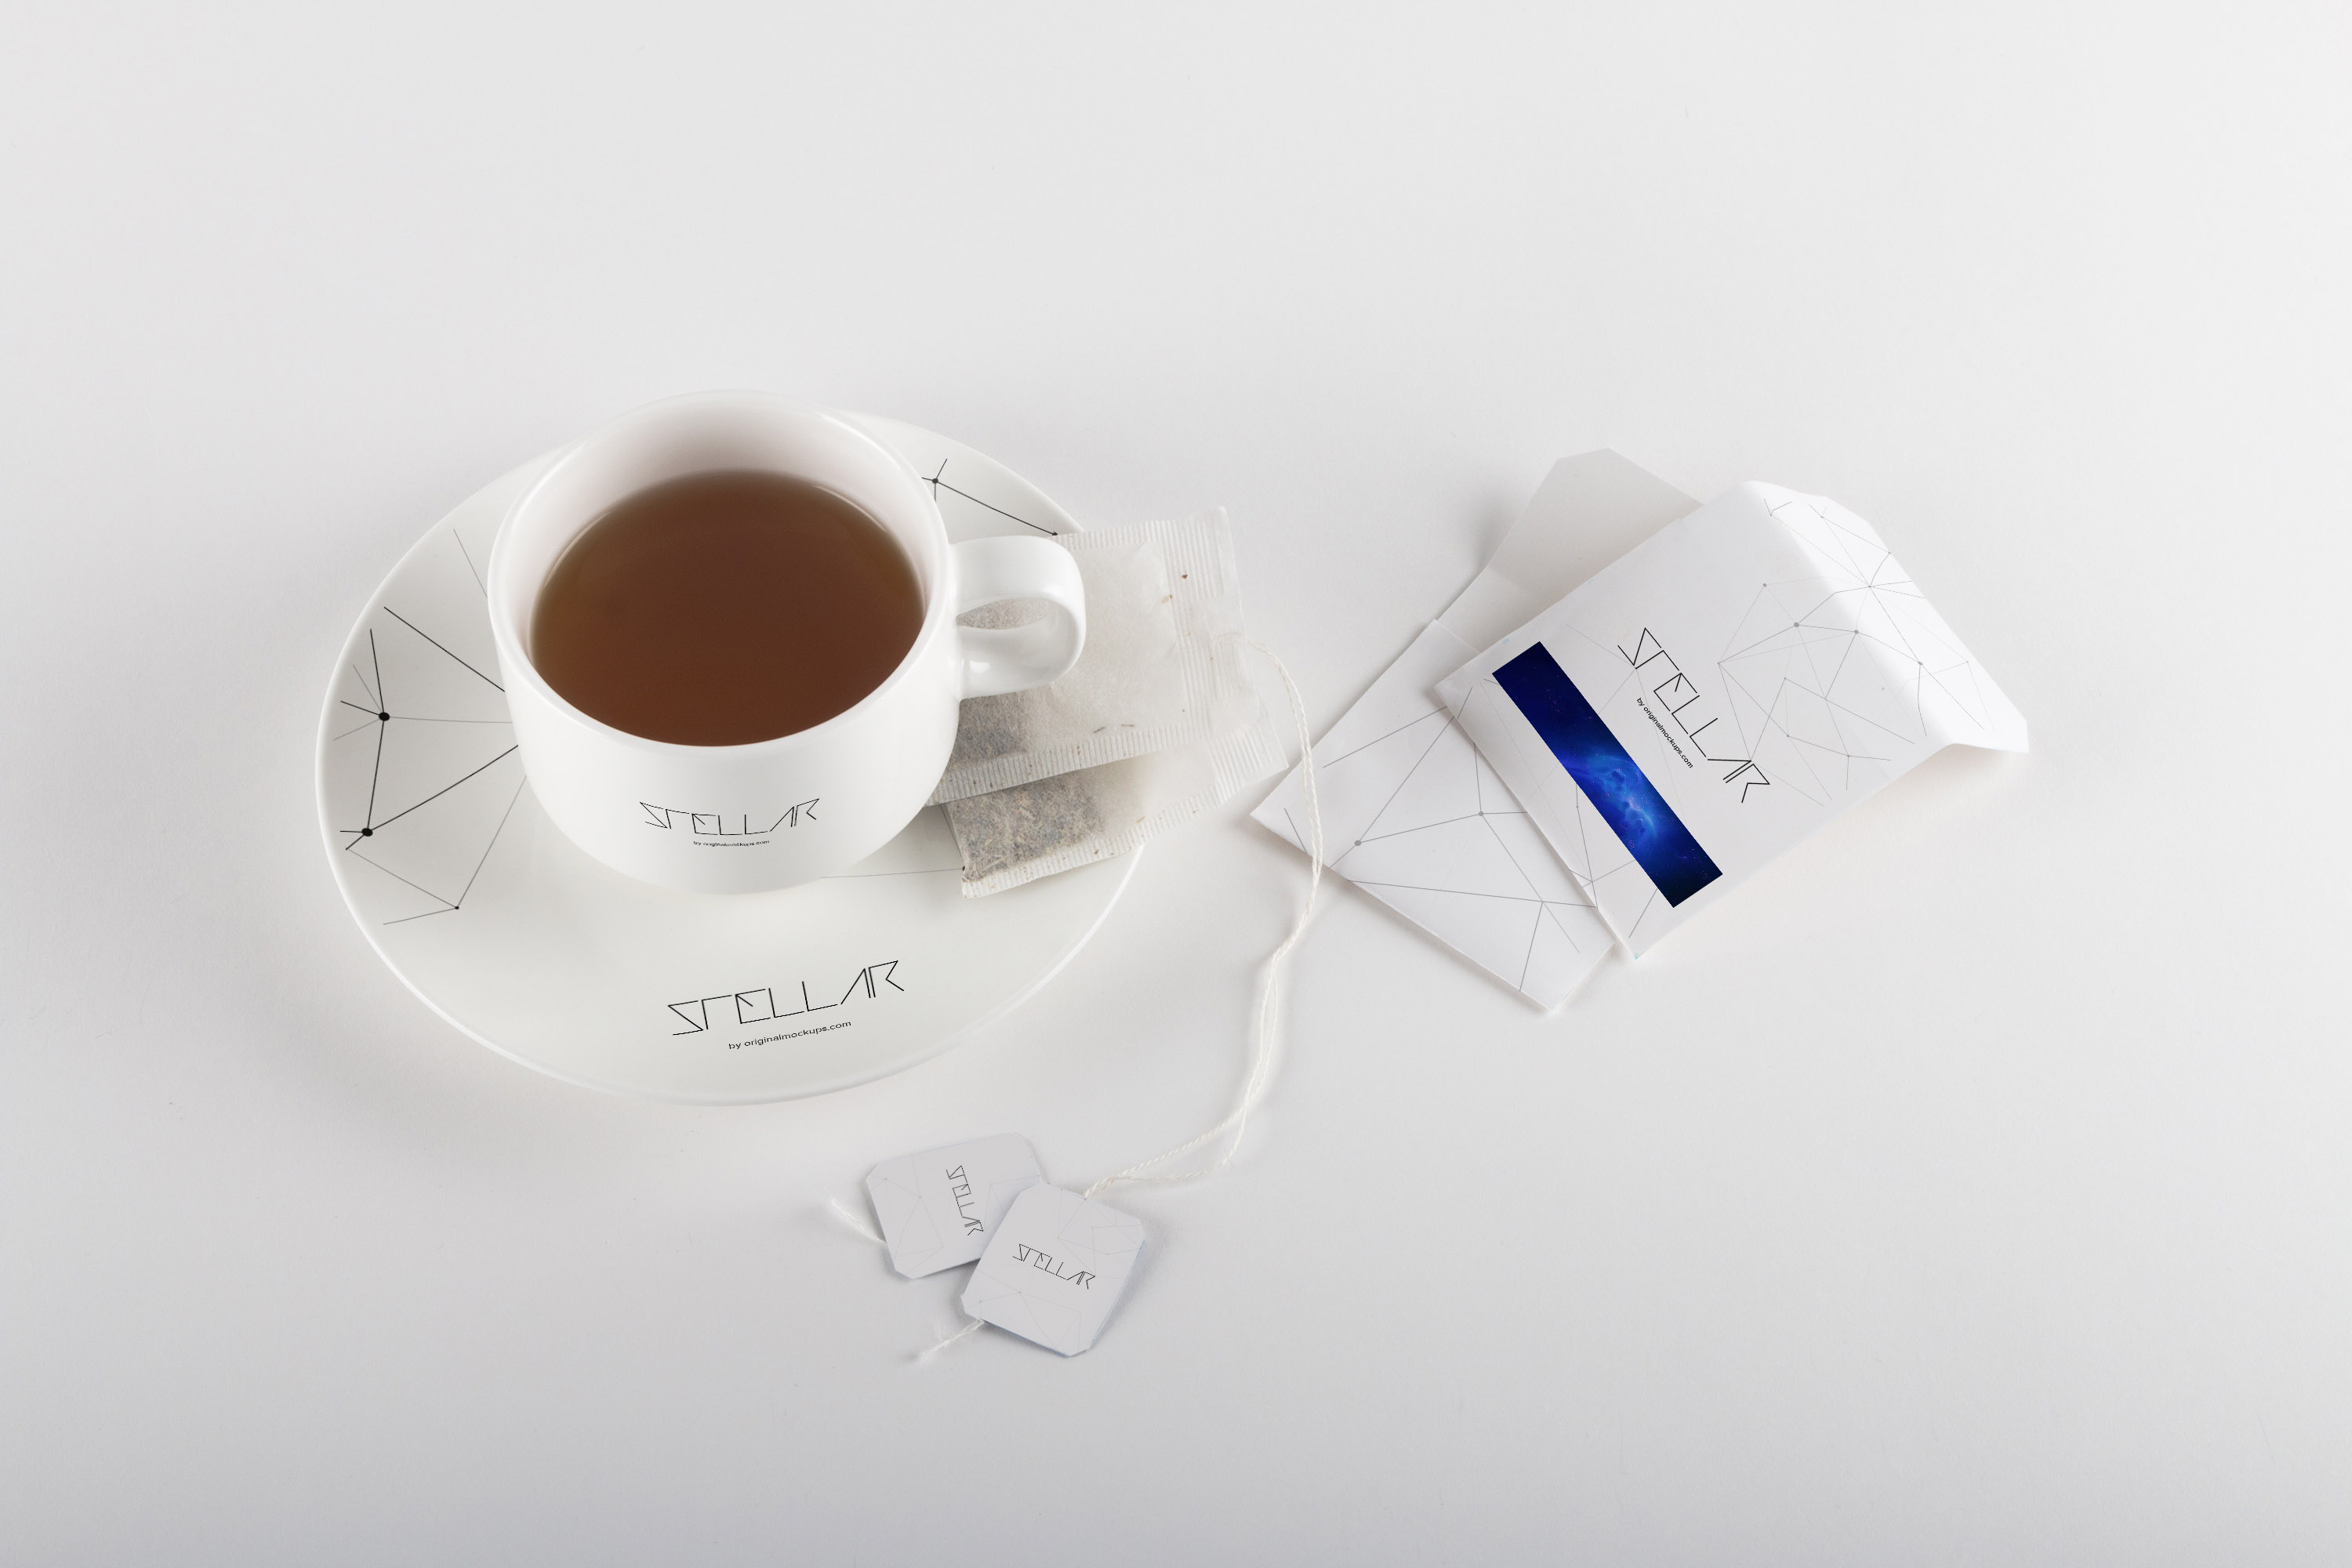 茶包品牌VI设计茶杯&茶包包装设计样机01 Tea cup and Tea Bags Mockup 01